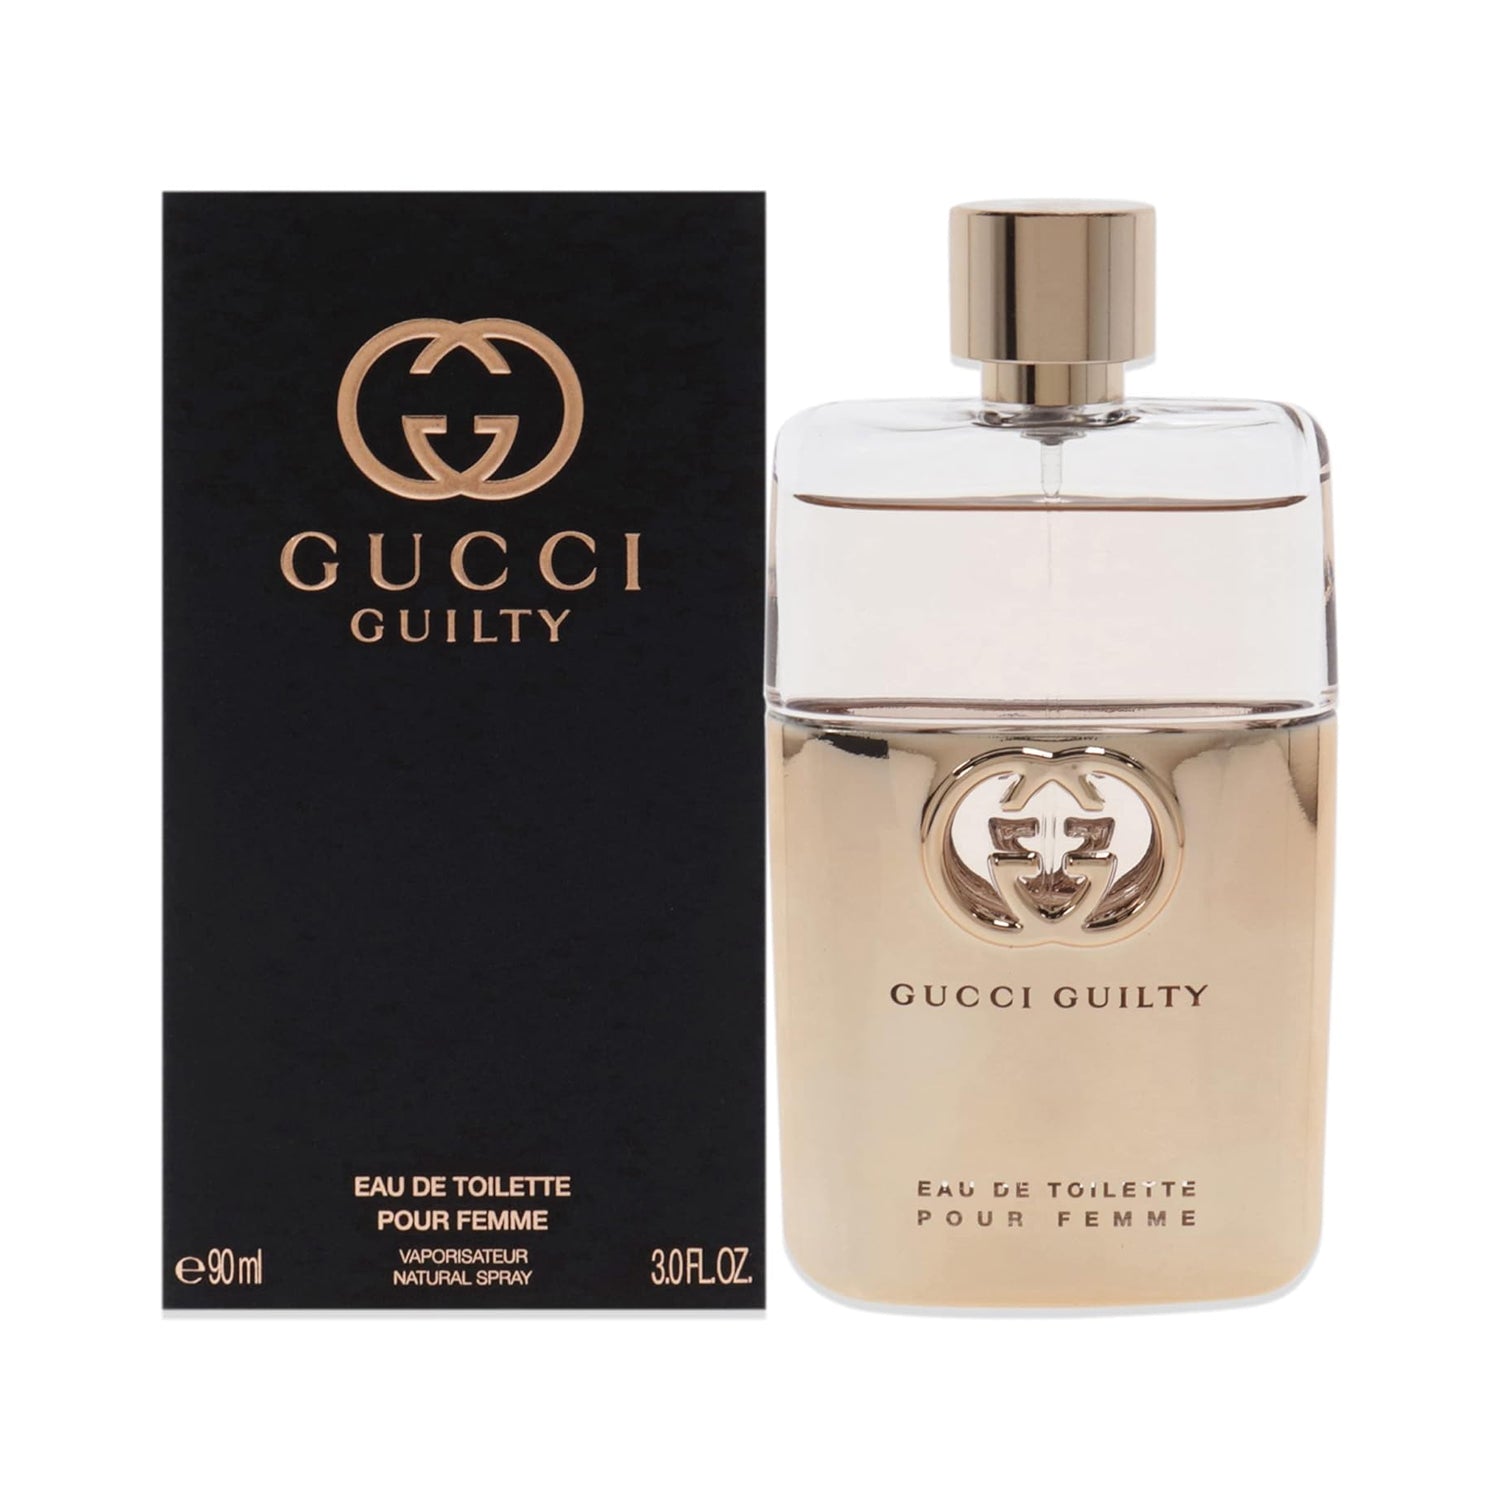 Gucci Guilty Pour Femme 90 ml Eau De Toilette Spray For Women